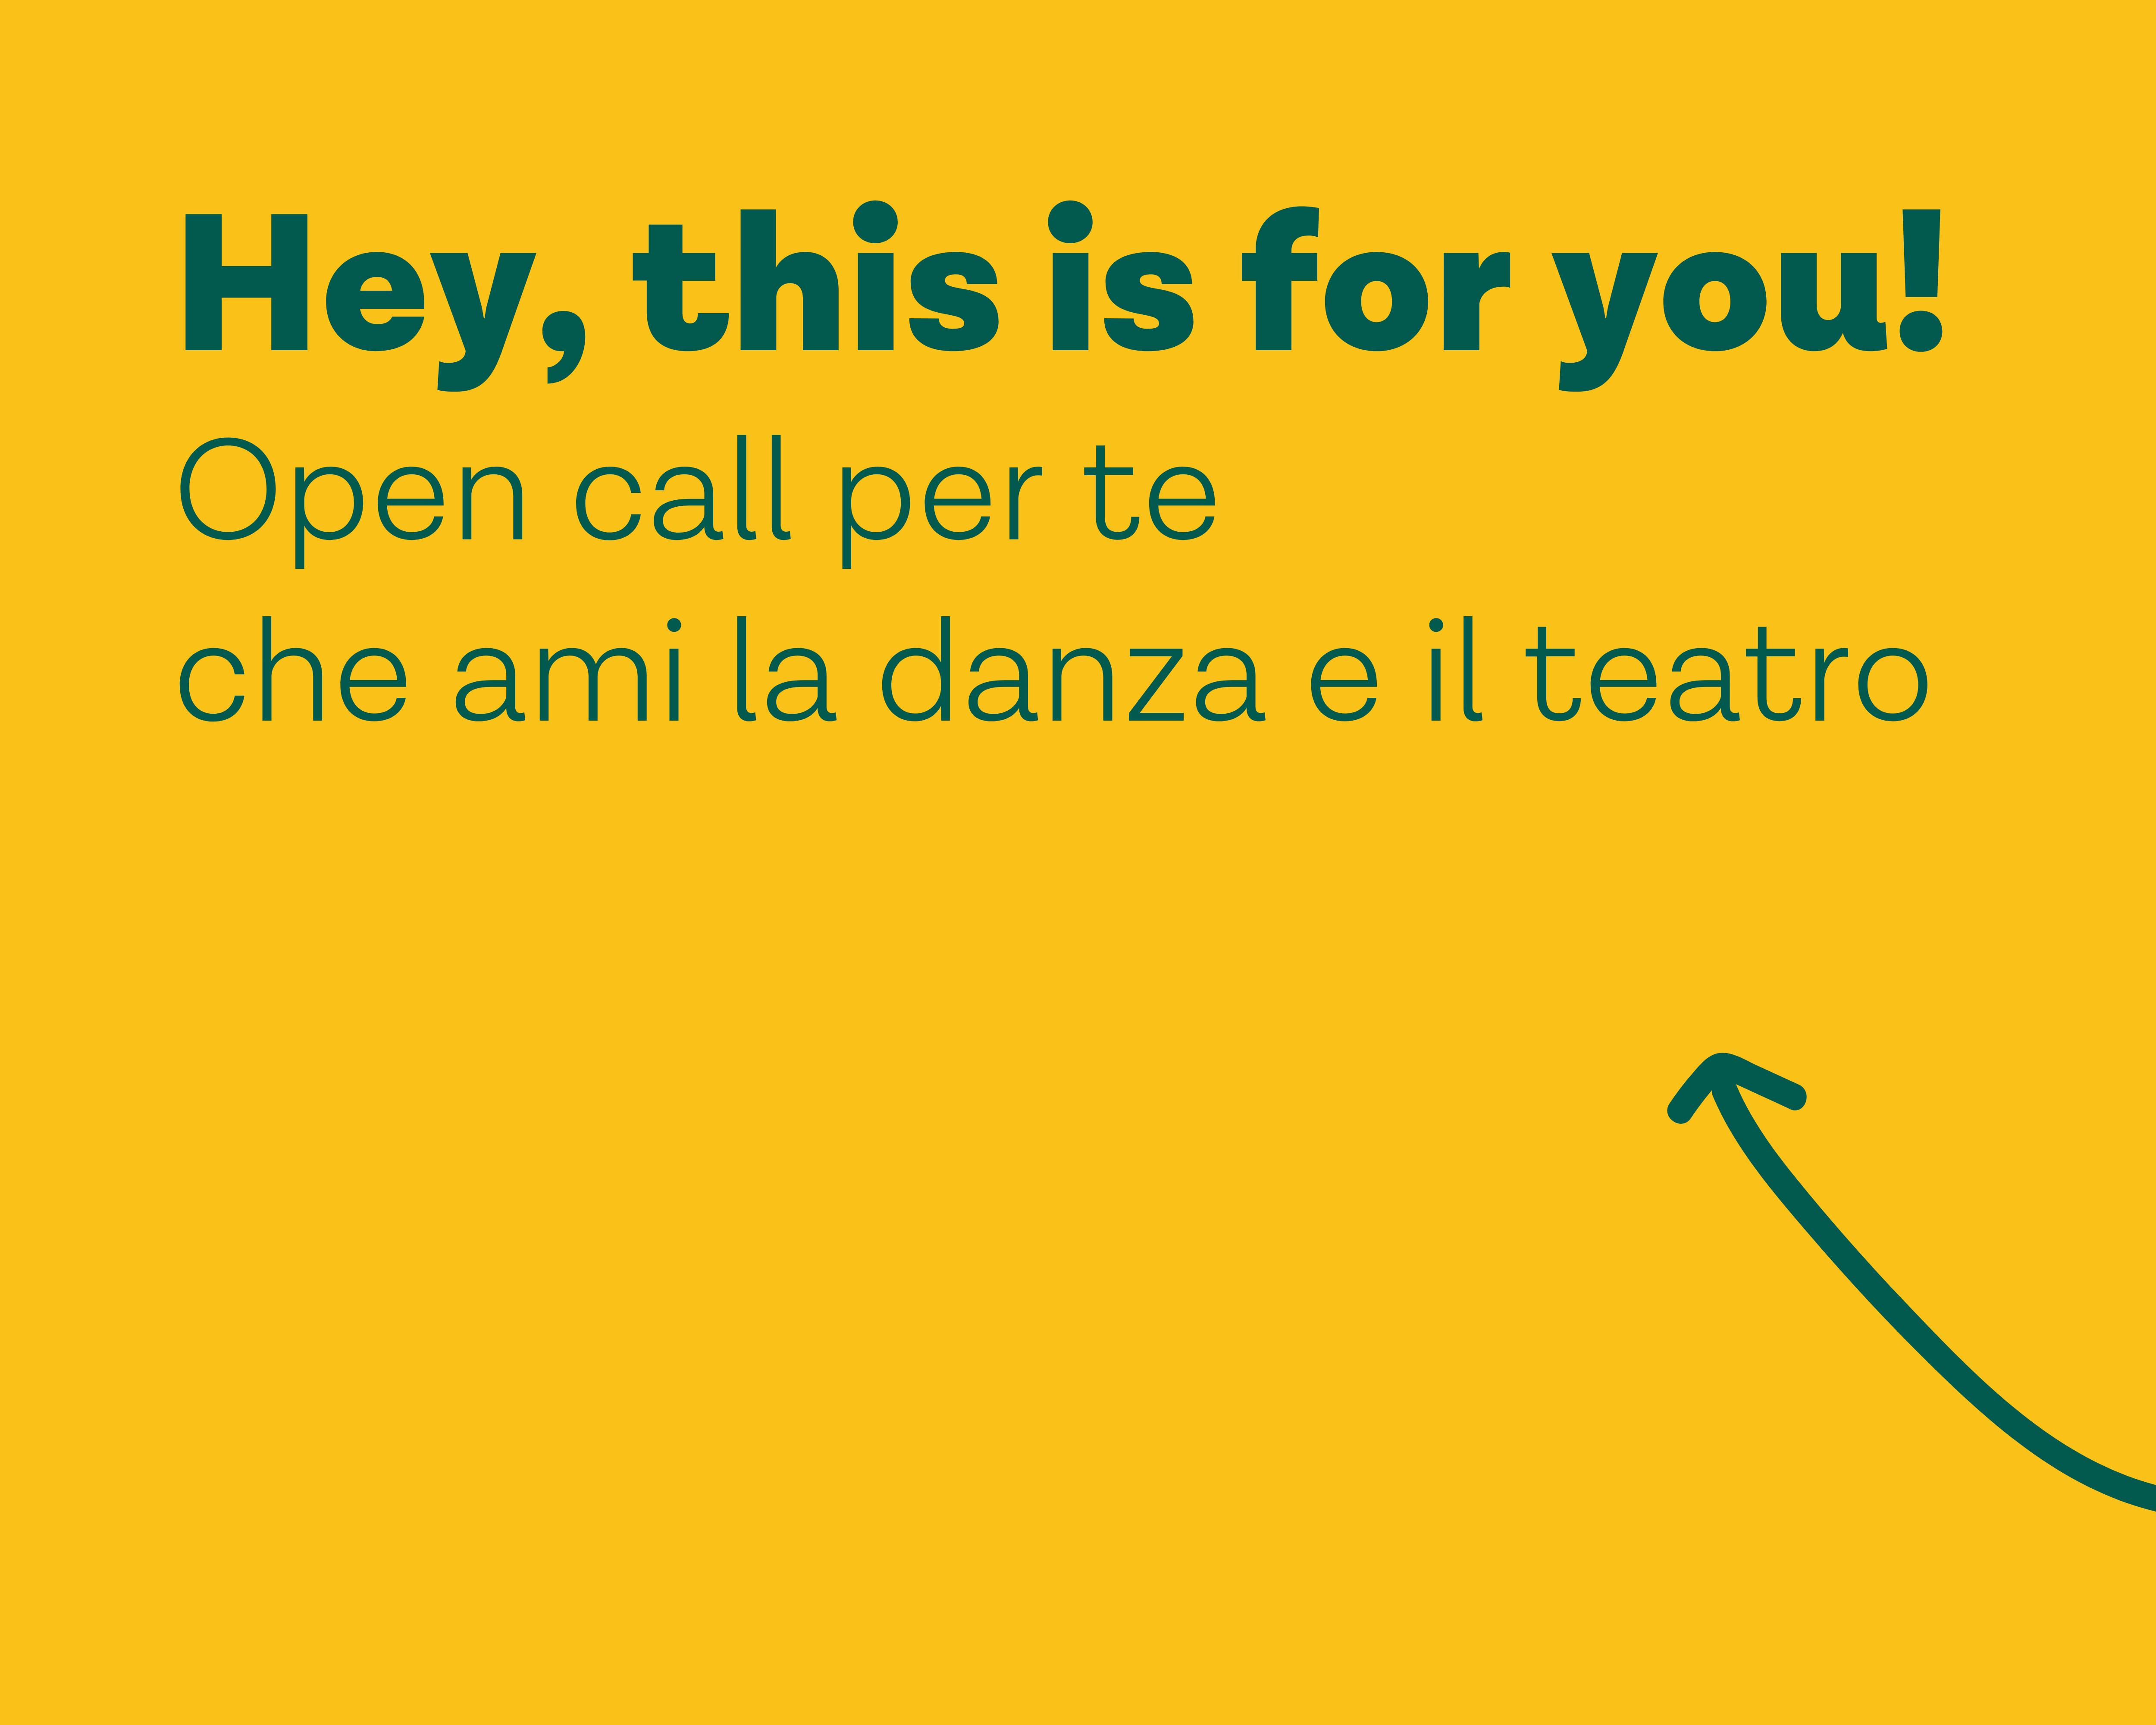 Grafica sfondo giallo con testo verde. Testo: Hey, this is for you! Open call per te che ami la danza e il teatro